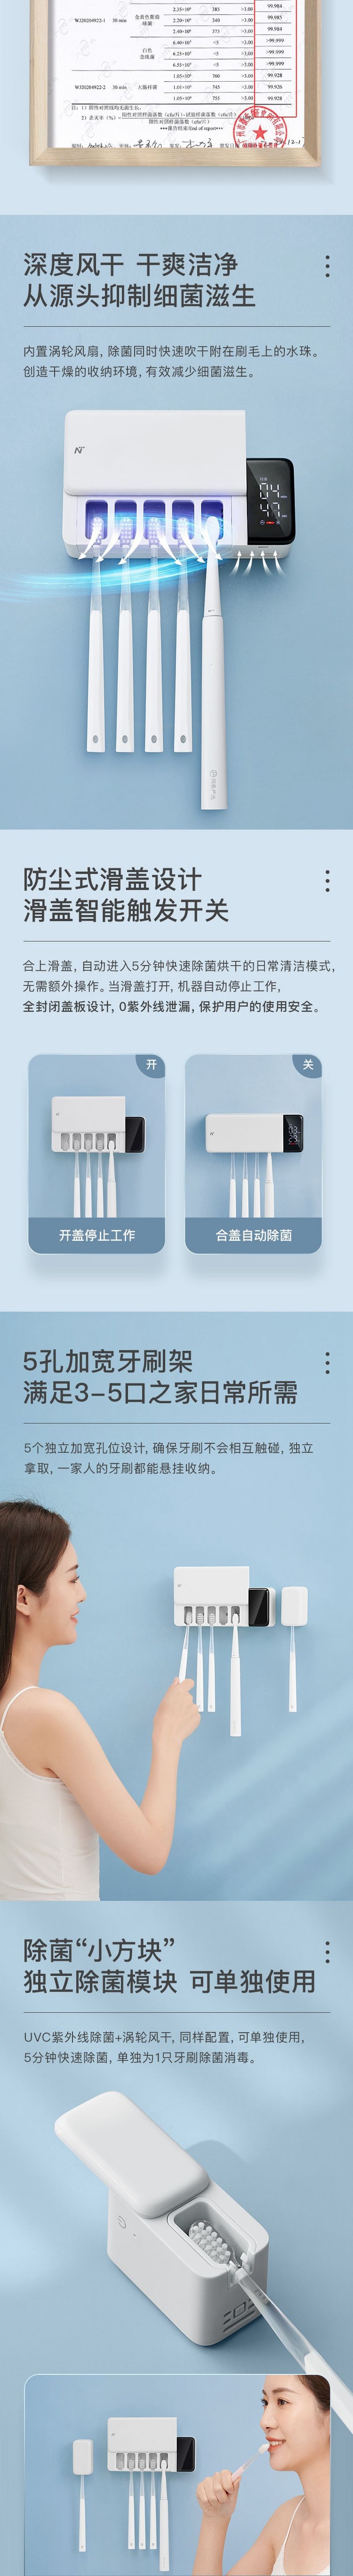 UV Sterilization Storage Toothbrush Holder White [5-7 Days U.S. Free Shipping]